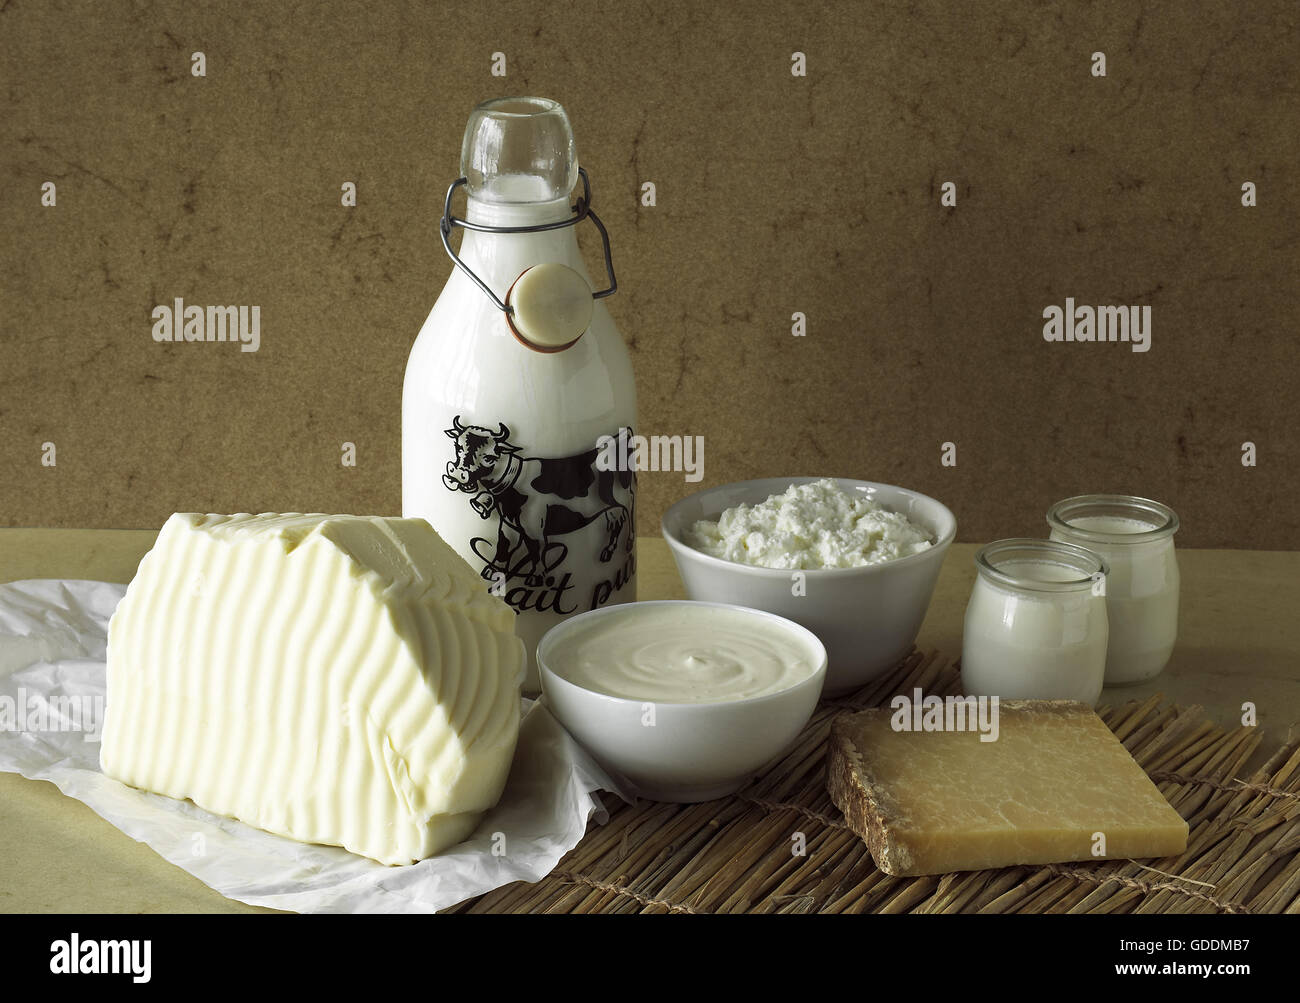 Les produits laitiers, le beurre, le lait, la crème fraîche, fromage, yogourt et fromage Cantal Banque D'Images